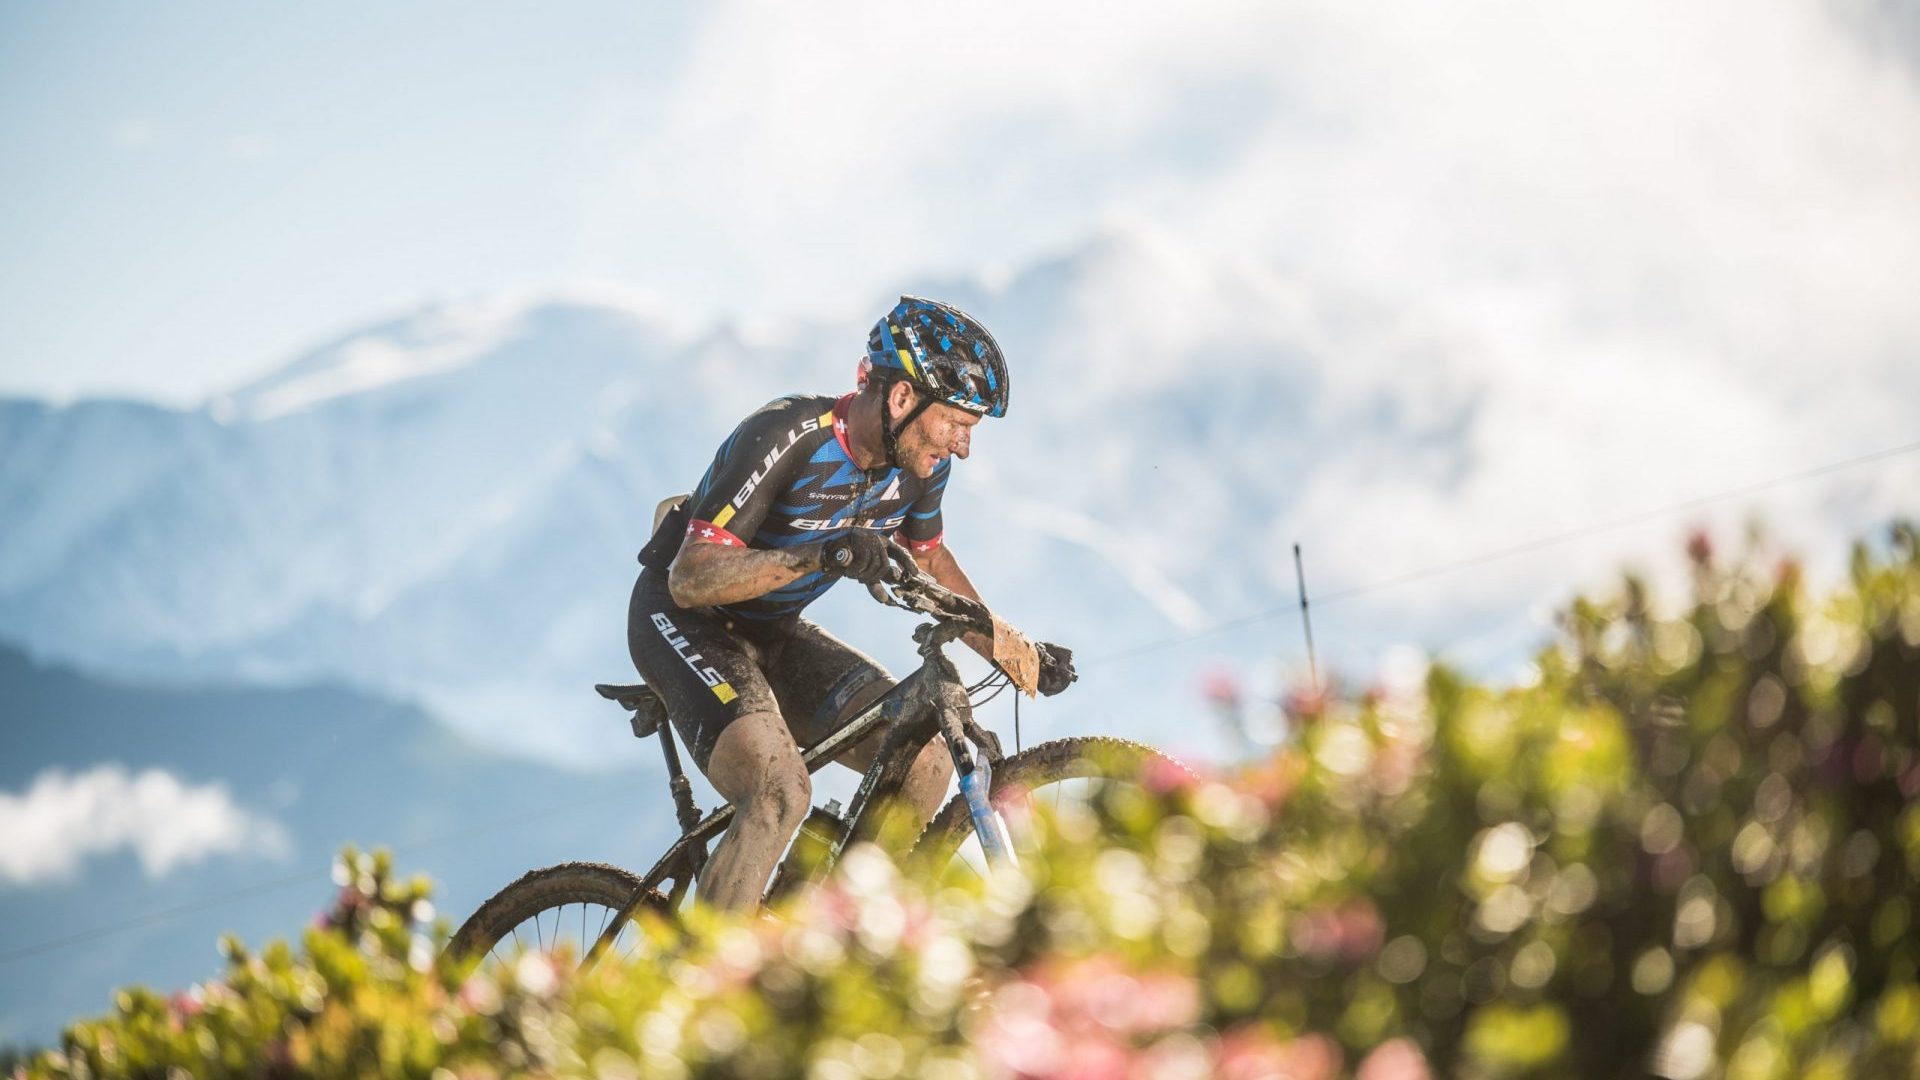 ciclista de montaña en el sendero alpino frente al Mont Blanc